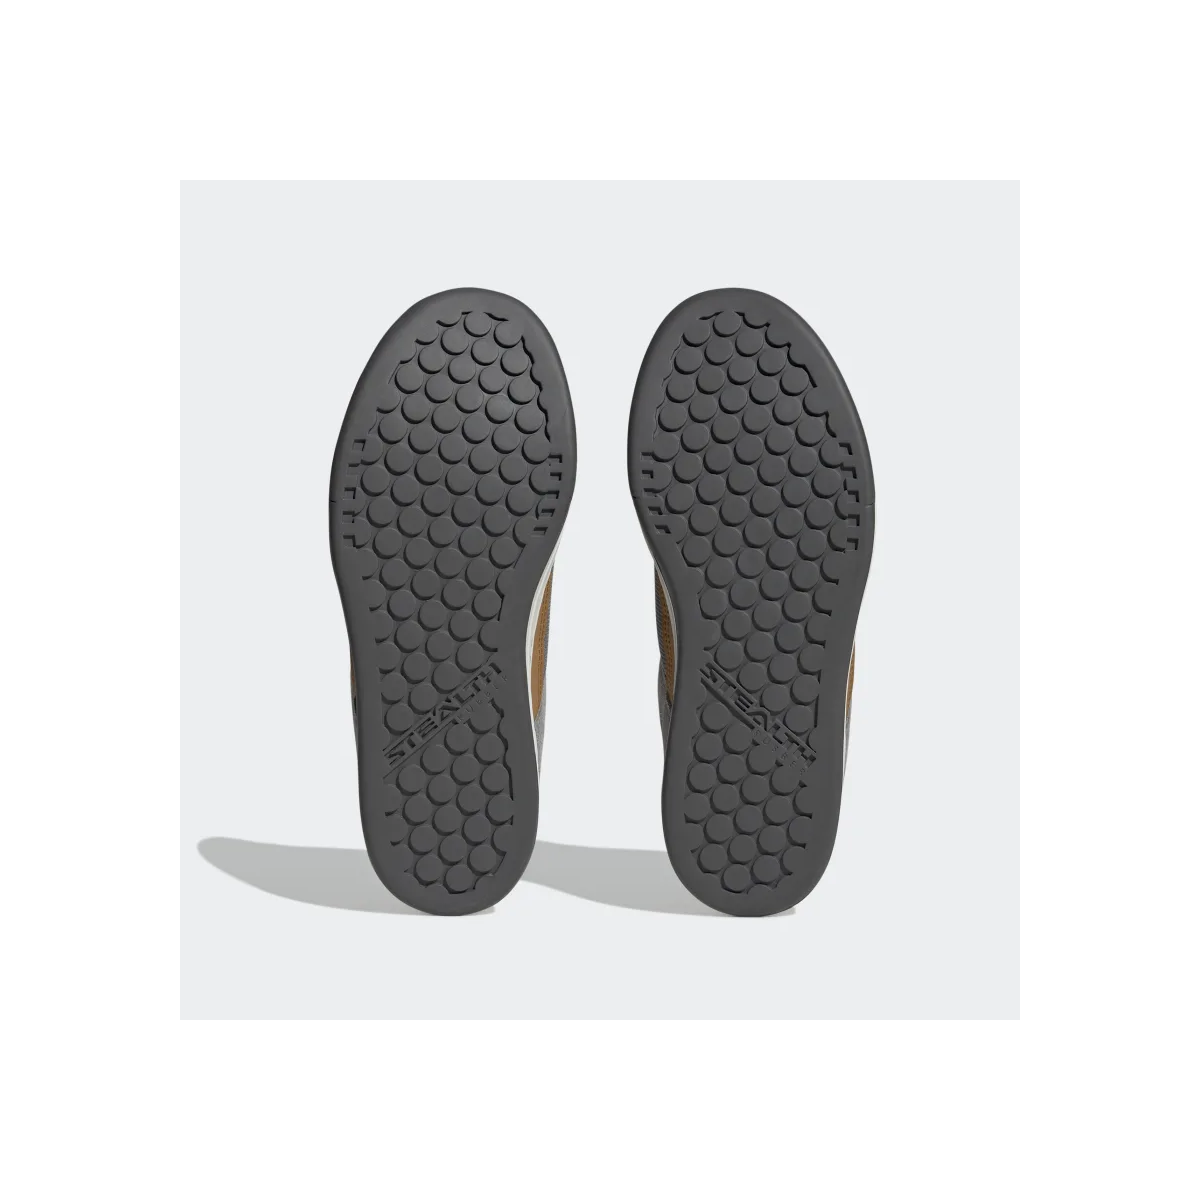 suela stealth de las Zapatillas mtb para pedal de plataforma Five Ten Freerider Gris/marrón | Enduro |HP9940